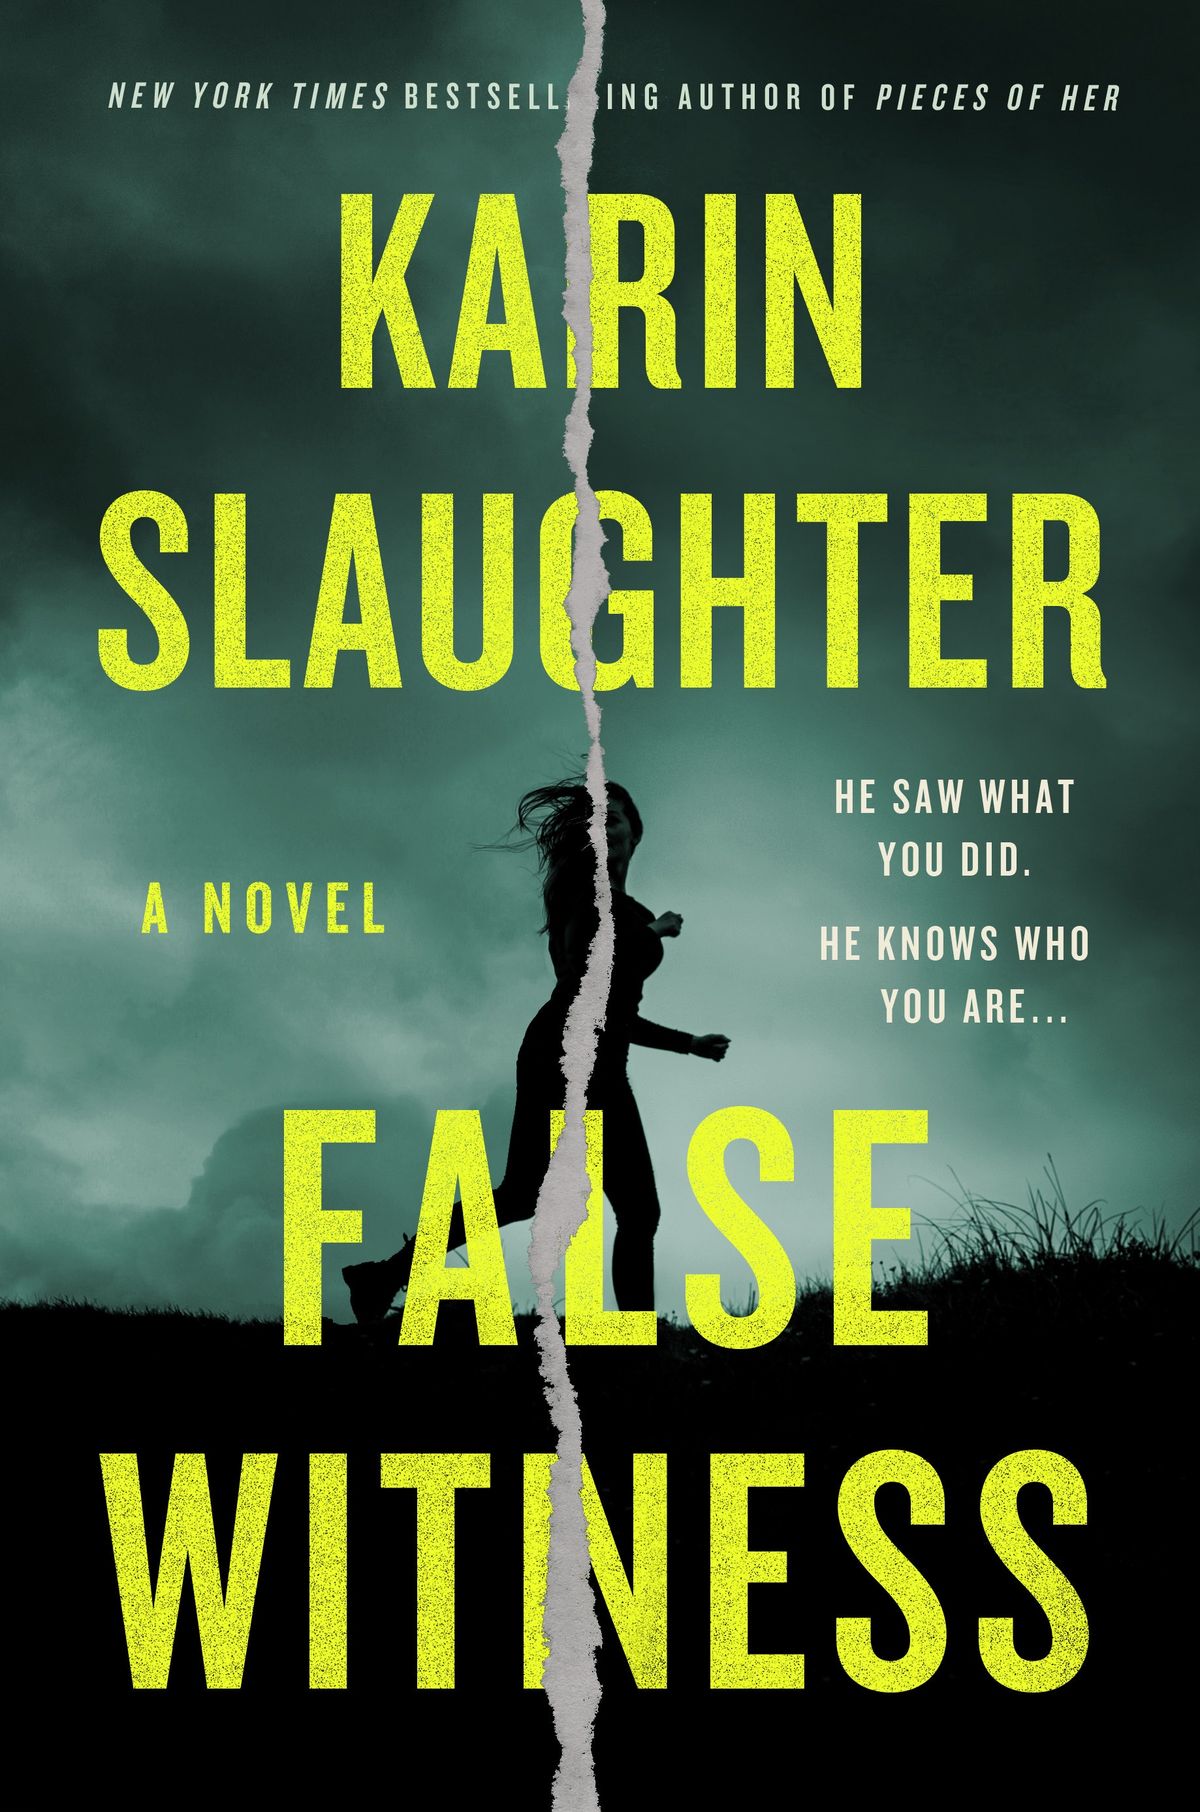 ¿Le encantó el extracto de la semana pasada del falso testigo de Karin Slaughter? Solo mejora.